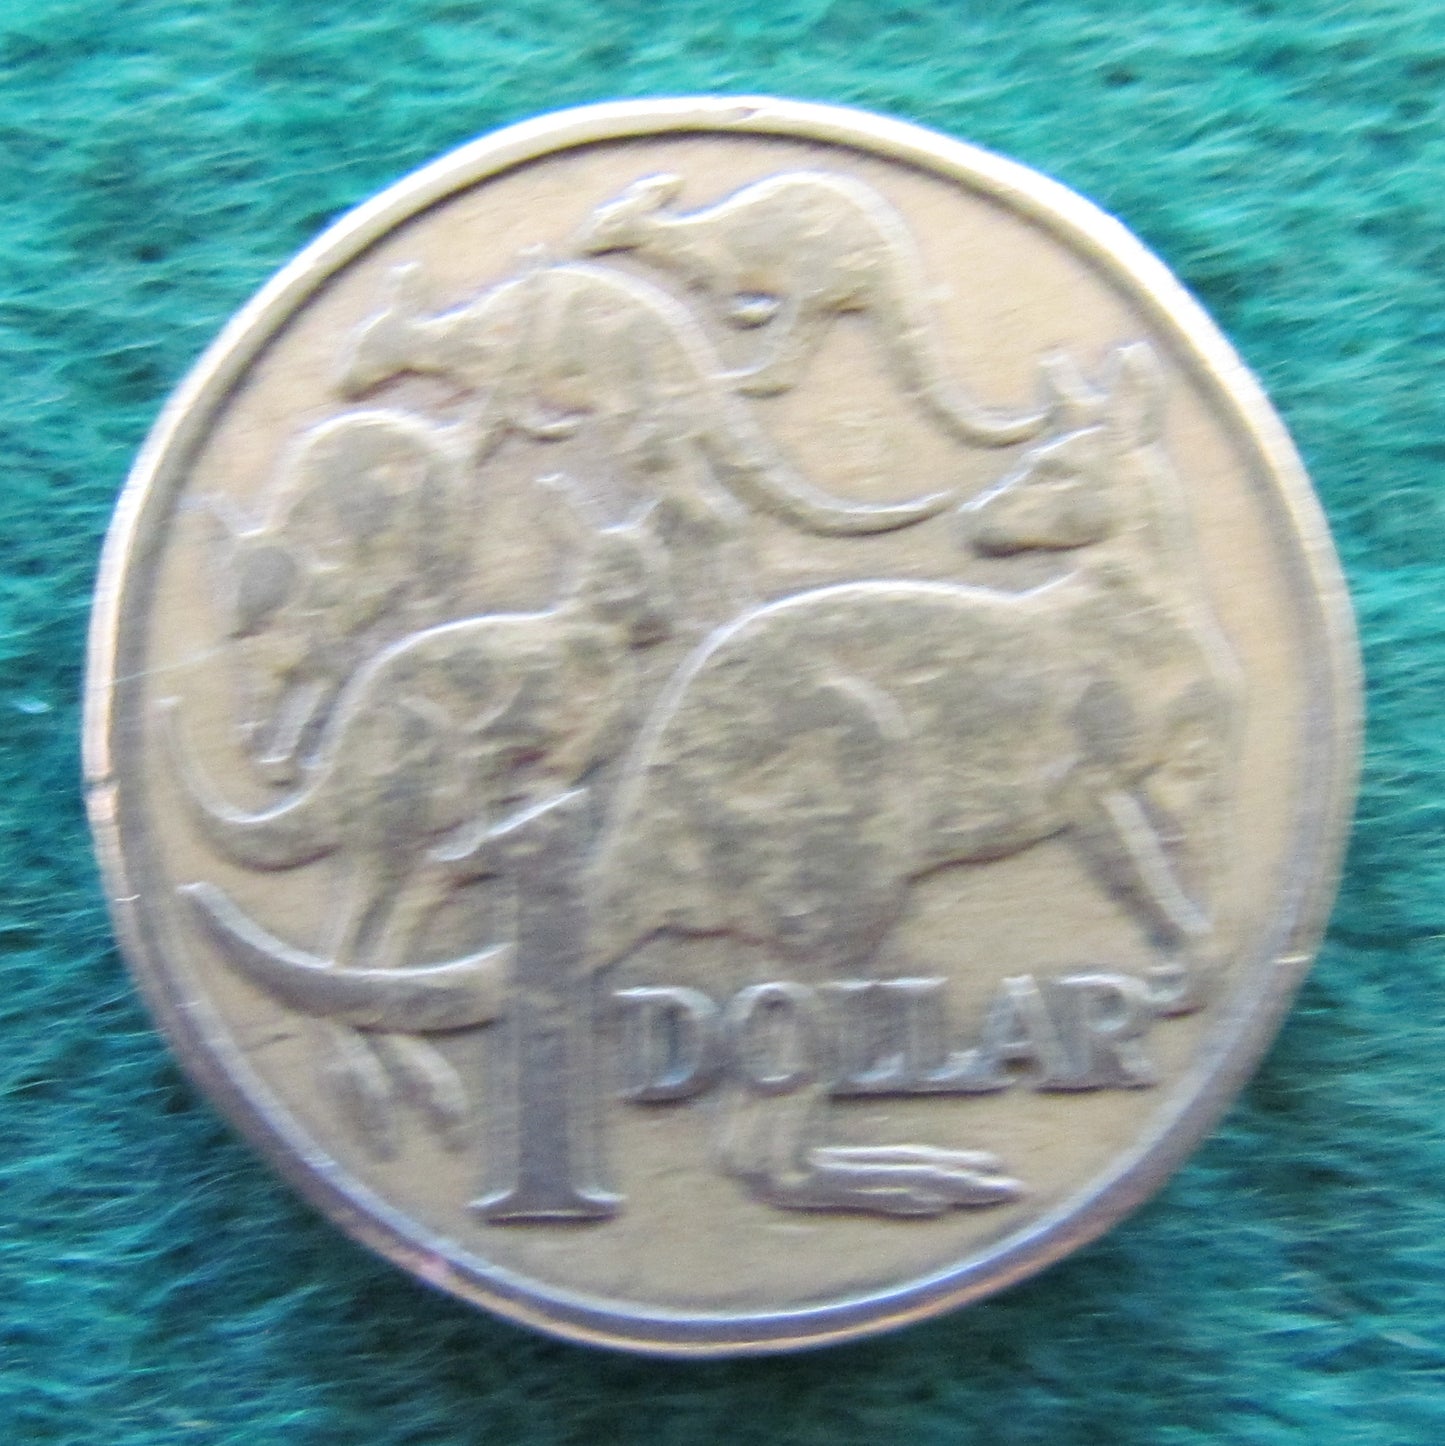 Australian 1984 1 Dollar MOR Queen Elizabeth Coin - Circulated